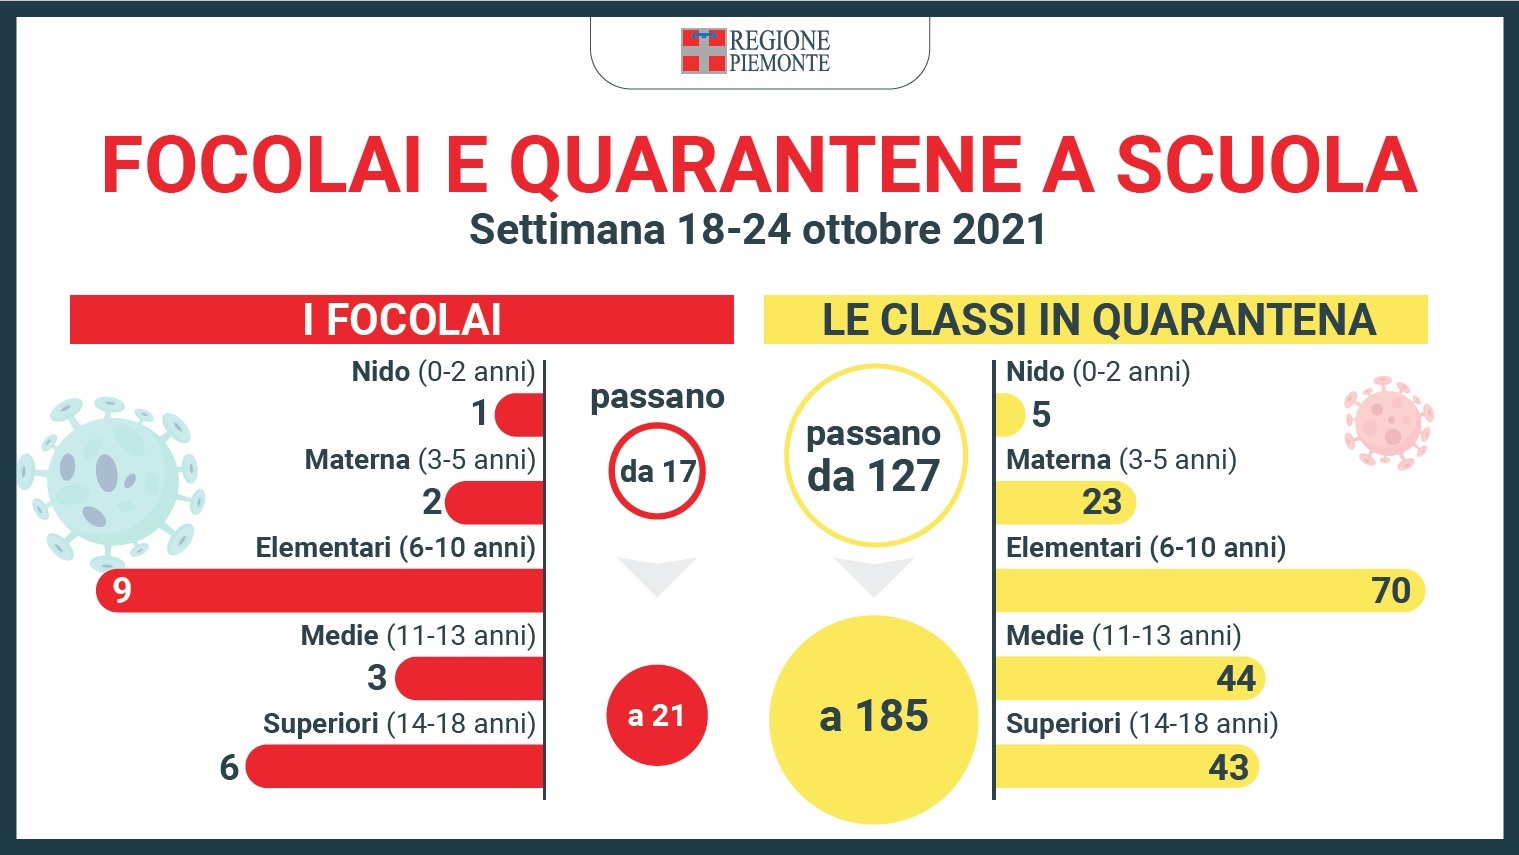 Monitoraggio settimanale sulle scuole della regione Piemonte: 21 focolai e 185 classi in quarantena 1